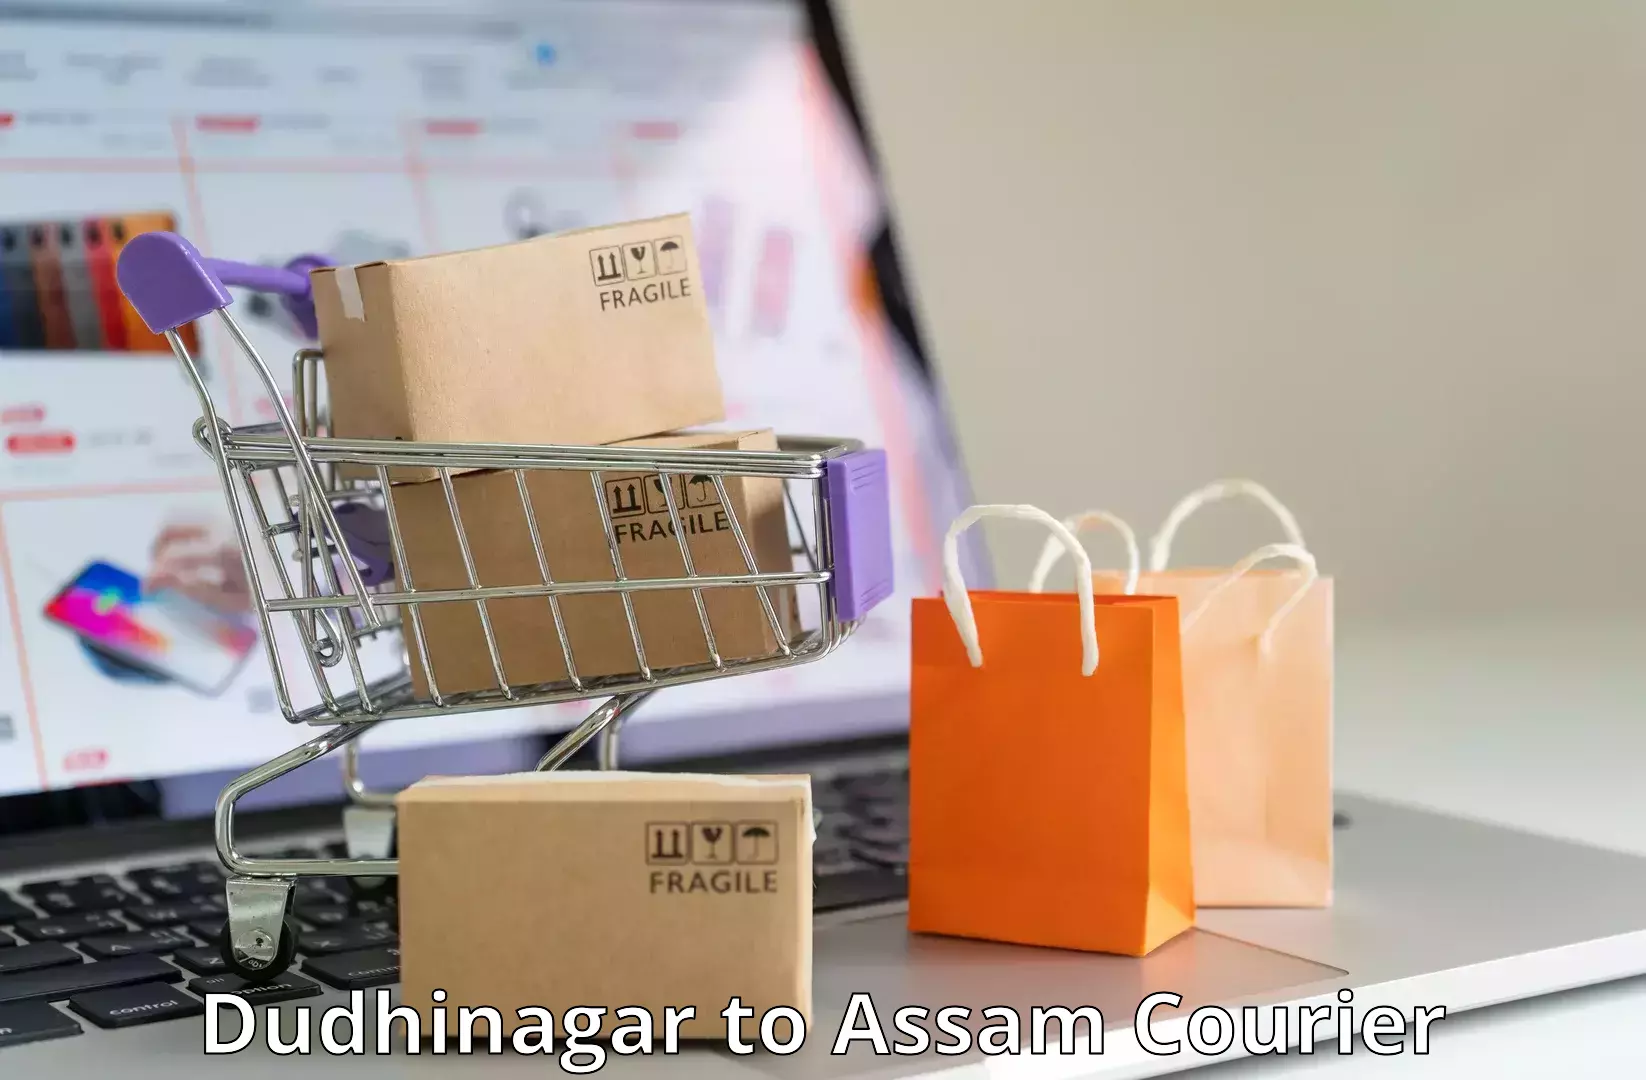 Smart courier technologies Dudhinagar to Nalbari